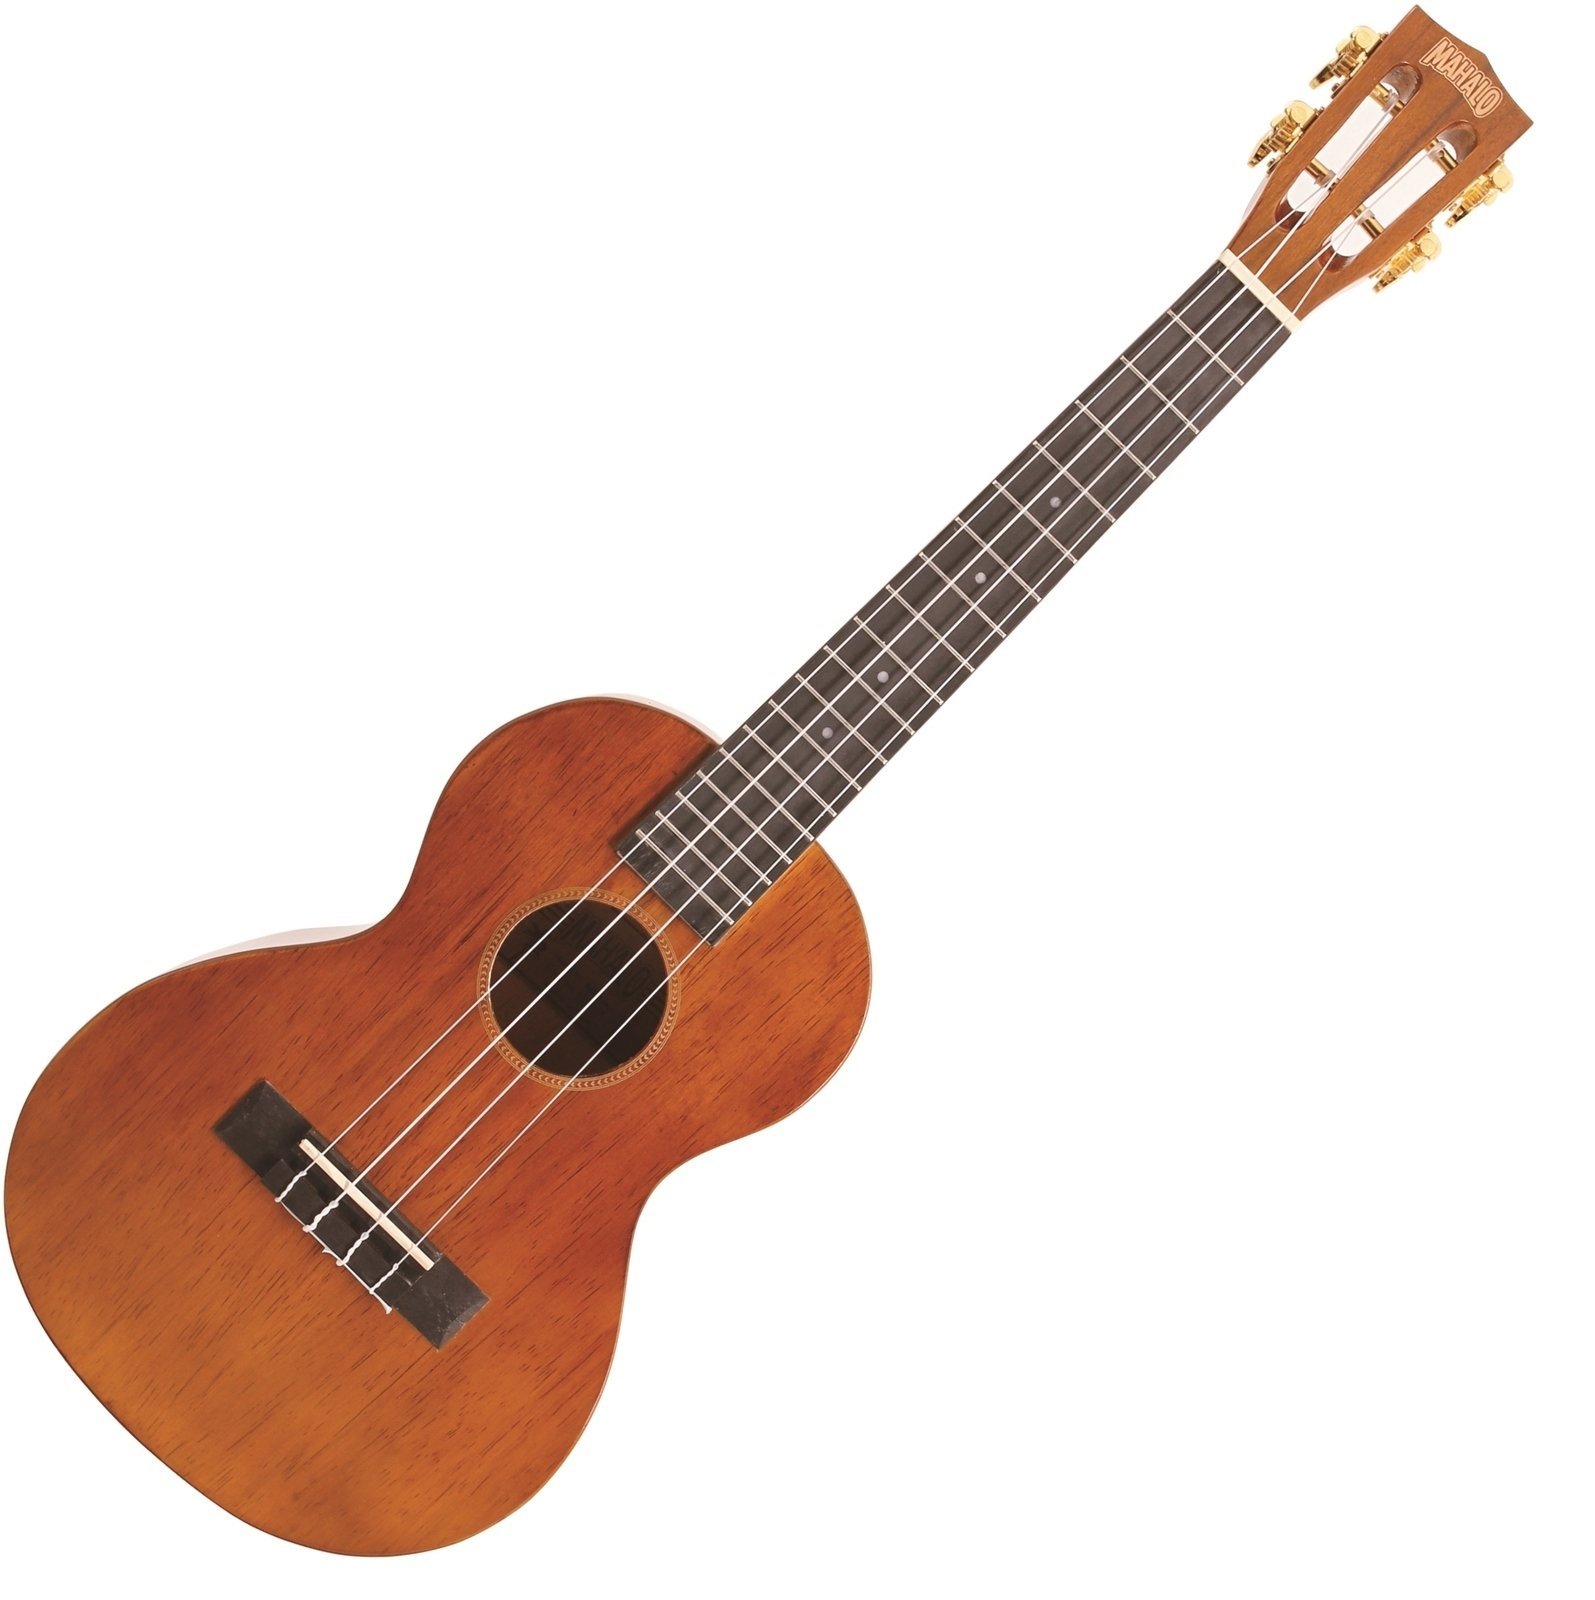 Tenori-ukulele Mahalo Electric-Acoustic Tenor Ukulele Cutaway Vintage Natural